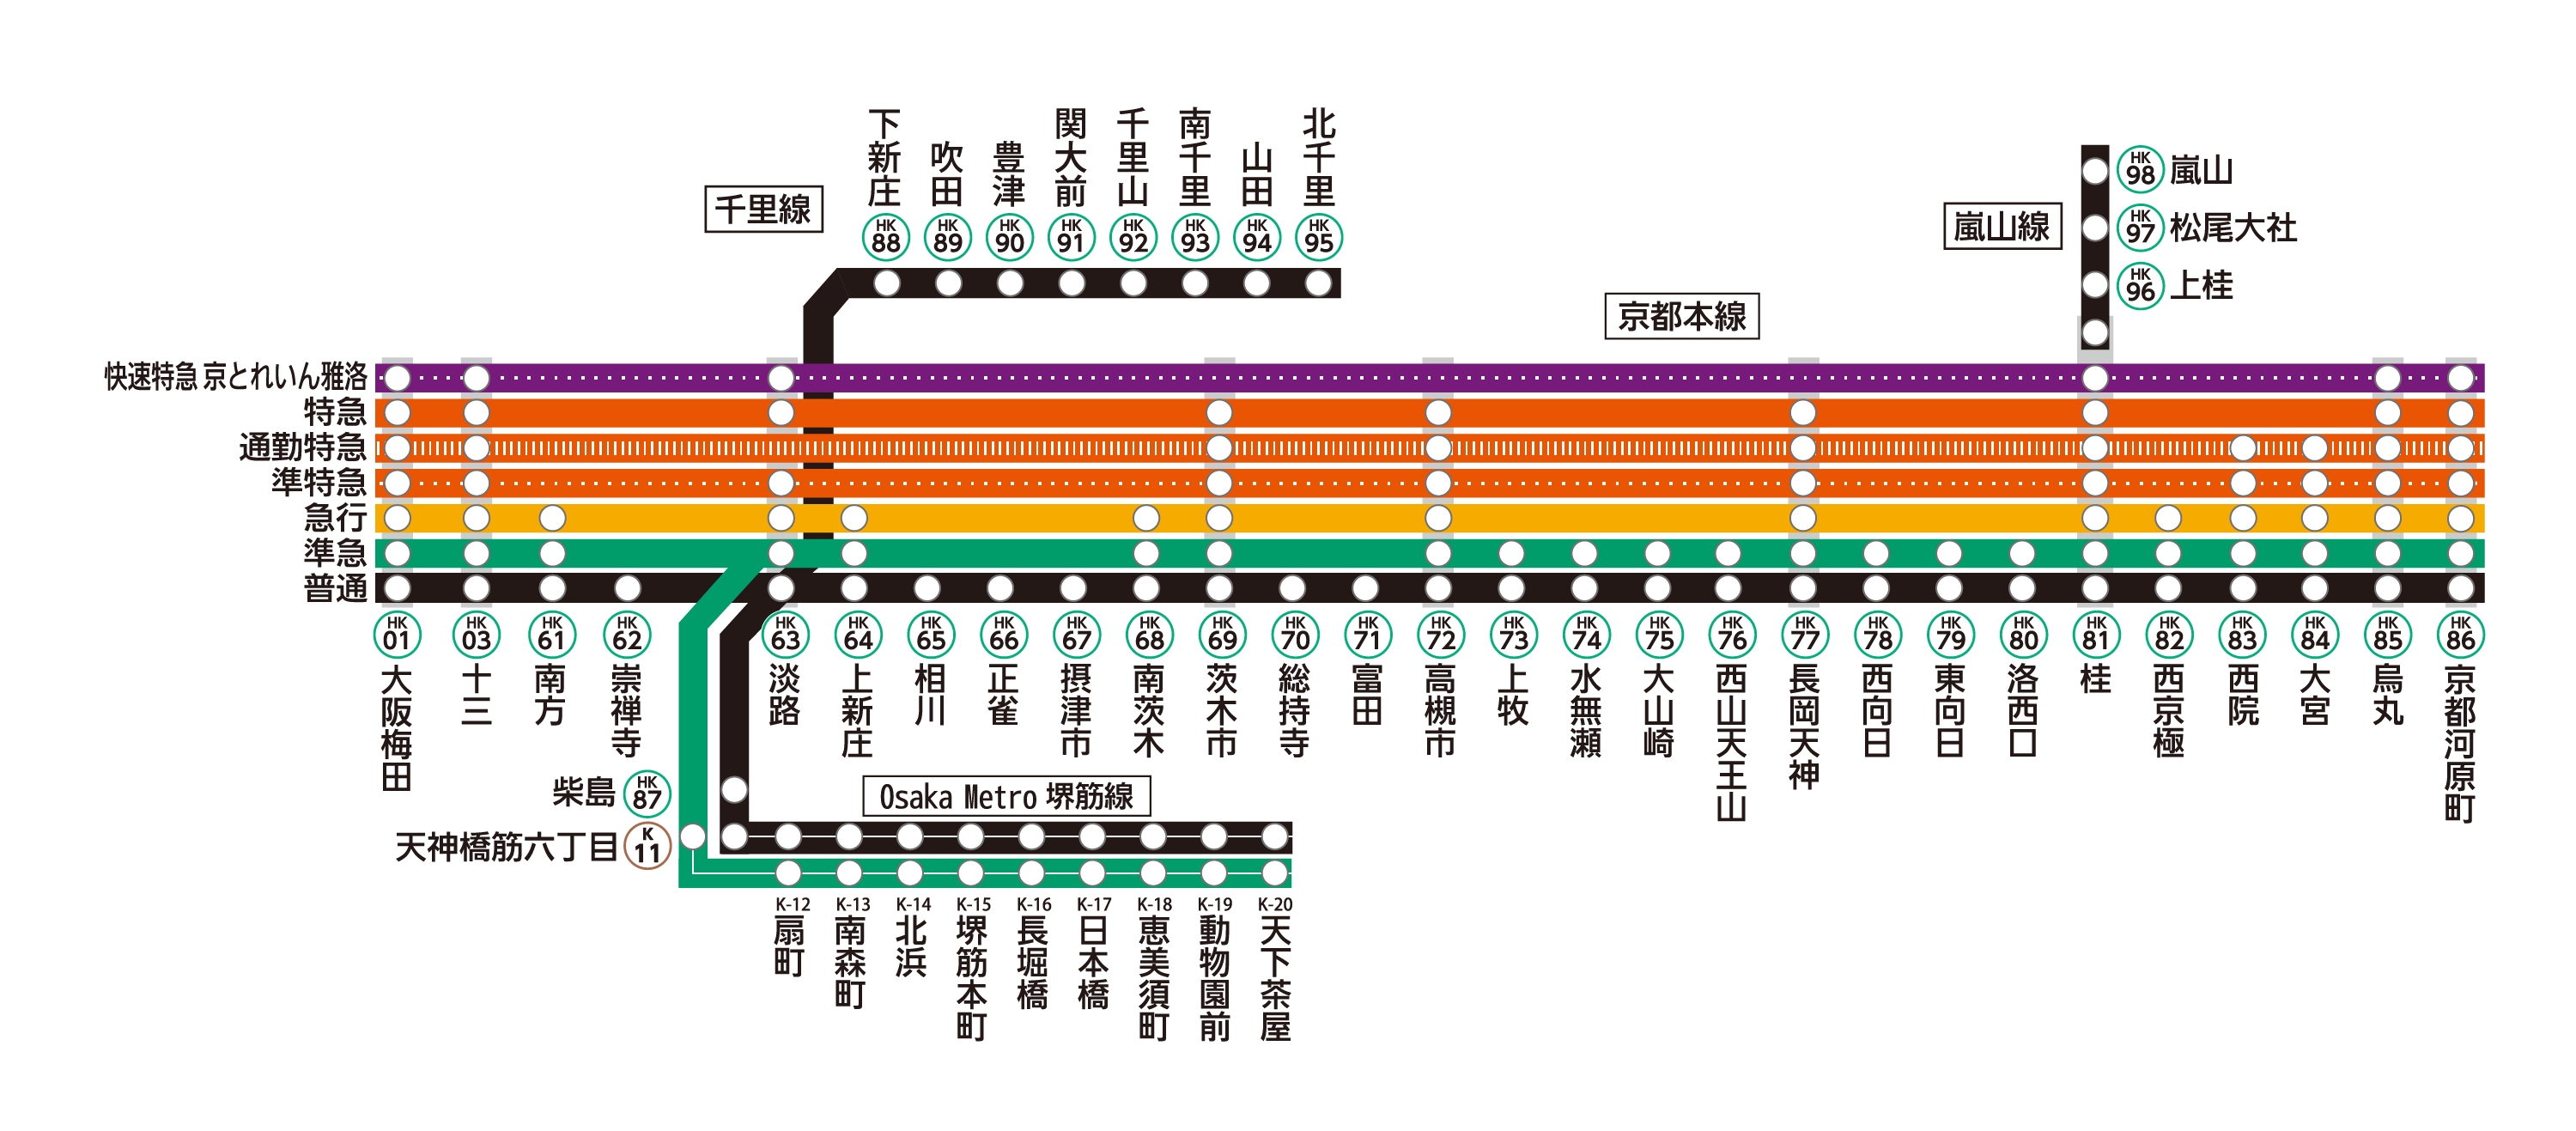 京都線は京都本線・千里線・嵐山線から構成されています。
京都線各駅の列車発車時刻や停車駅は、上部の「サービス施設一覧」から、各駅の時刻表ページをご確認ください。